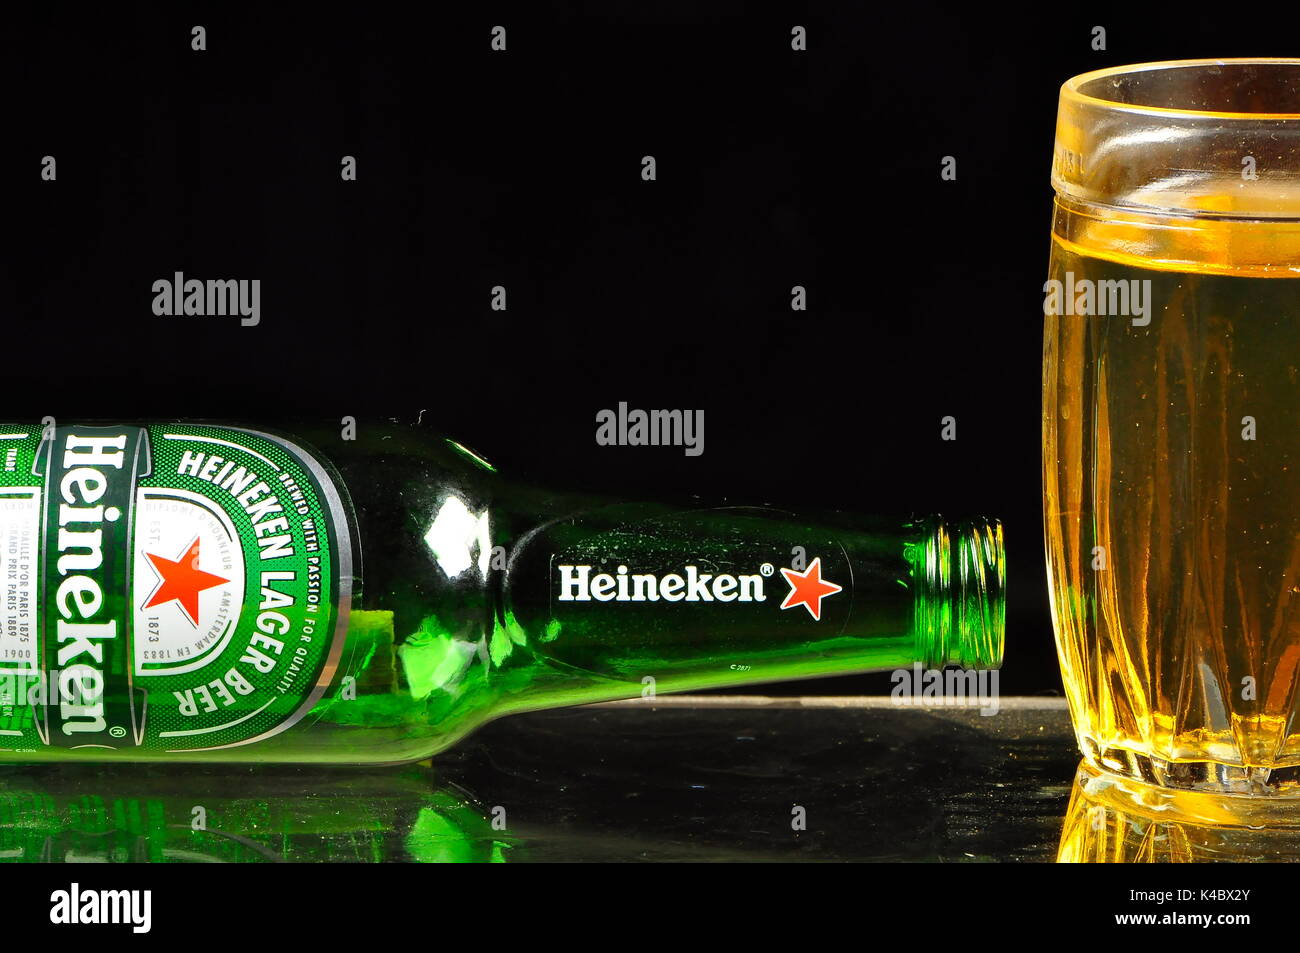 Heineken beer concept Stock Photo